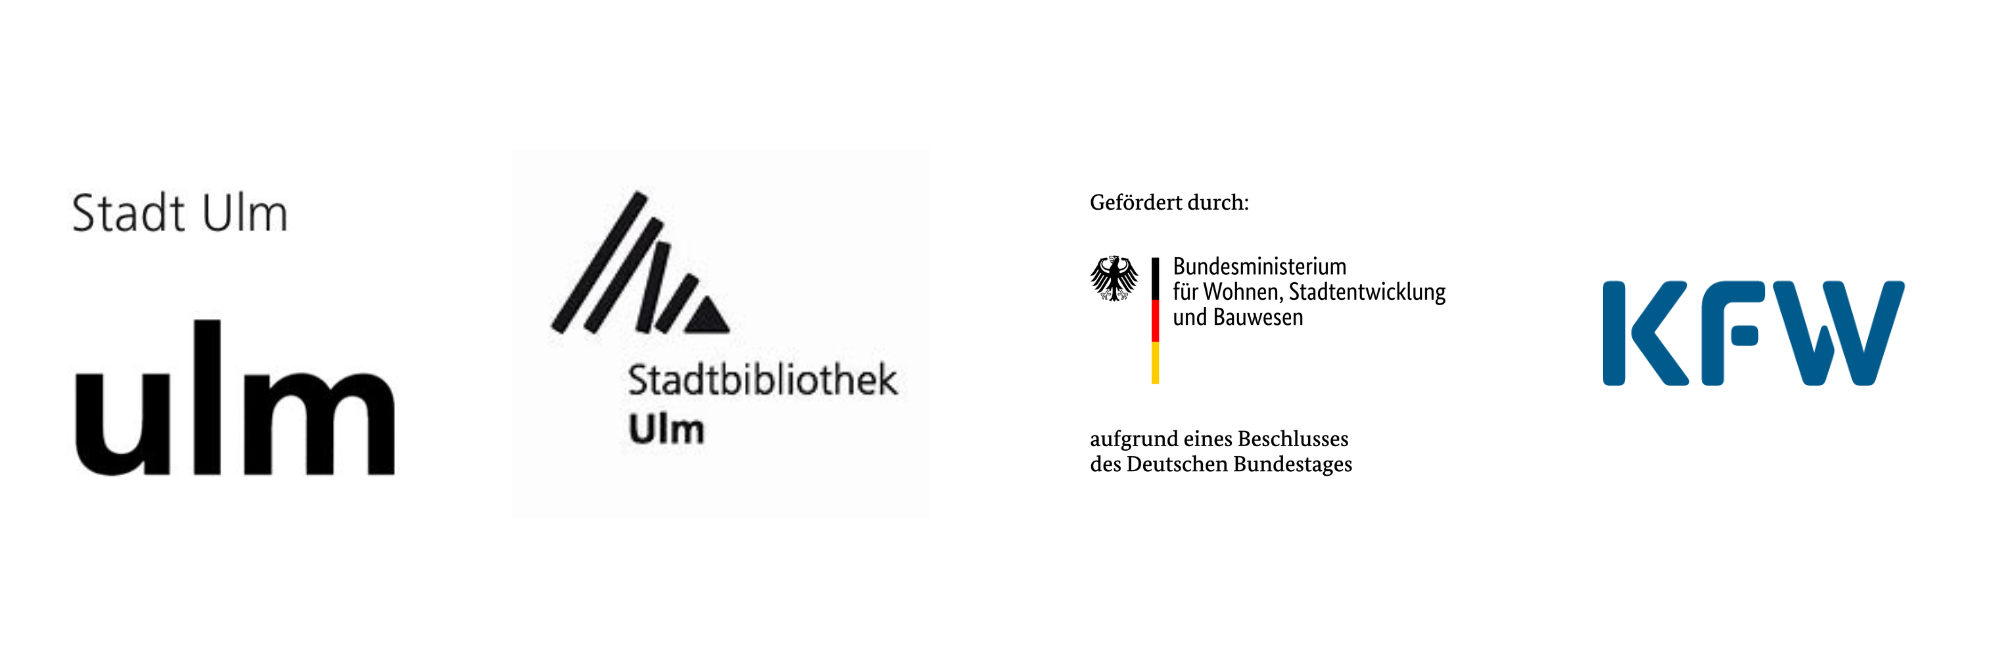 Logos der Stadt Ulm, der Stadtbibliothek Ulm und der KfW. Außerdem ein Hinweis auf Förderung durch Bundeministerium für Wohnen, Stadtentwicklug und Bauwesen.